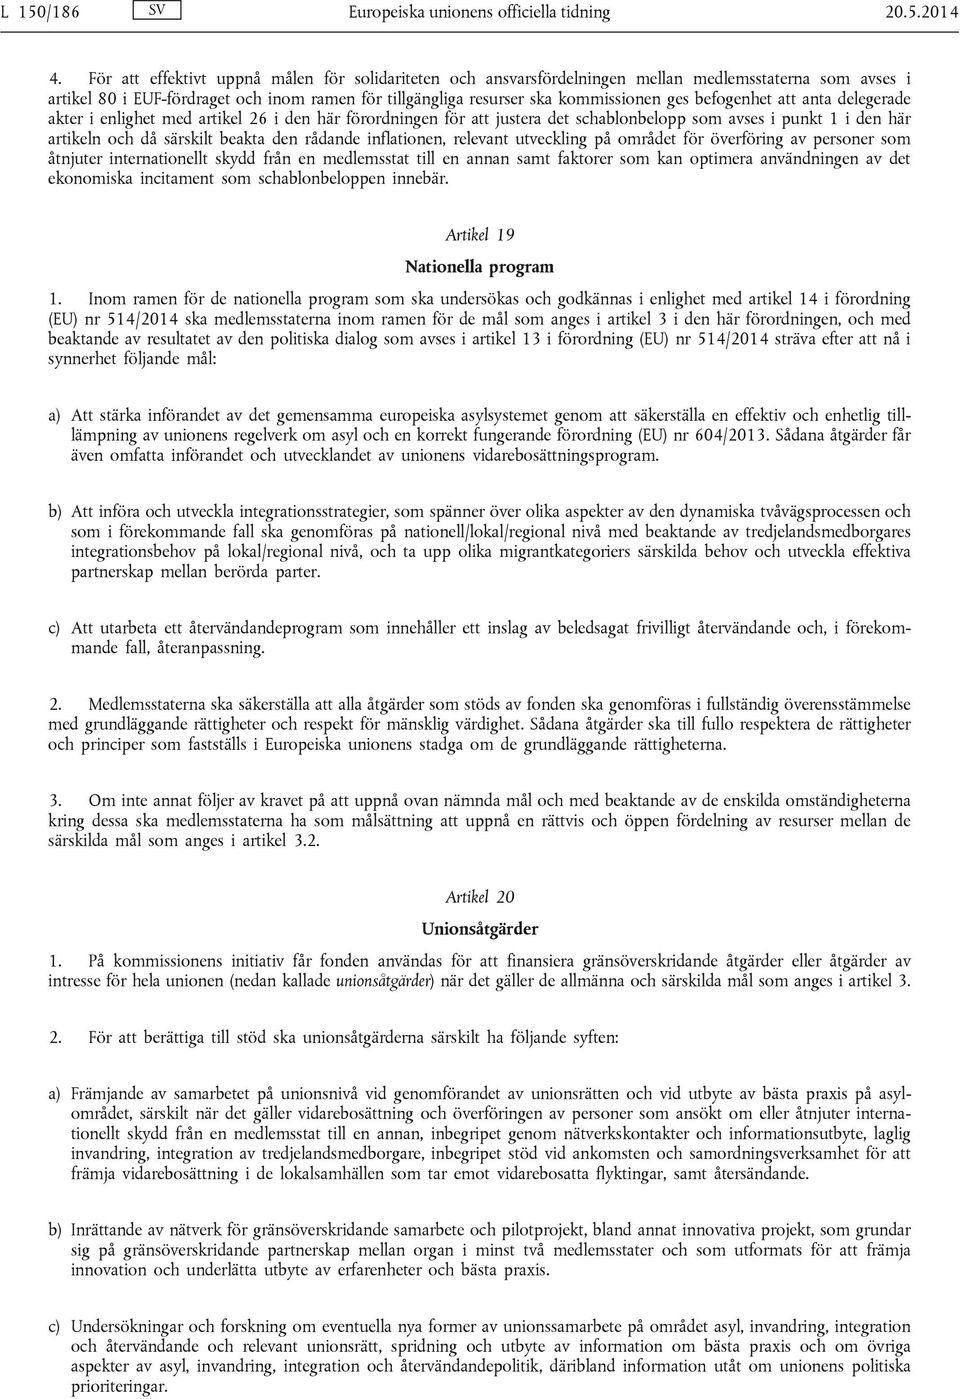 befogenhet att anta delegerade akter i enlighet med artikel 26 i den här förordningen för att justera det schablonbelopp som avses i punkt 1 i den här artikeln och då särskilt beakta den rådande